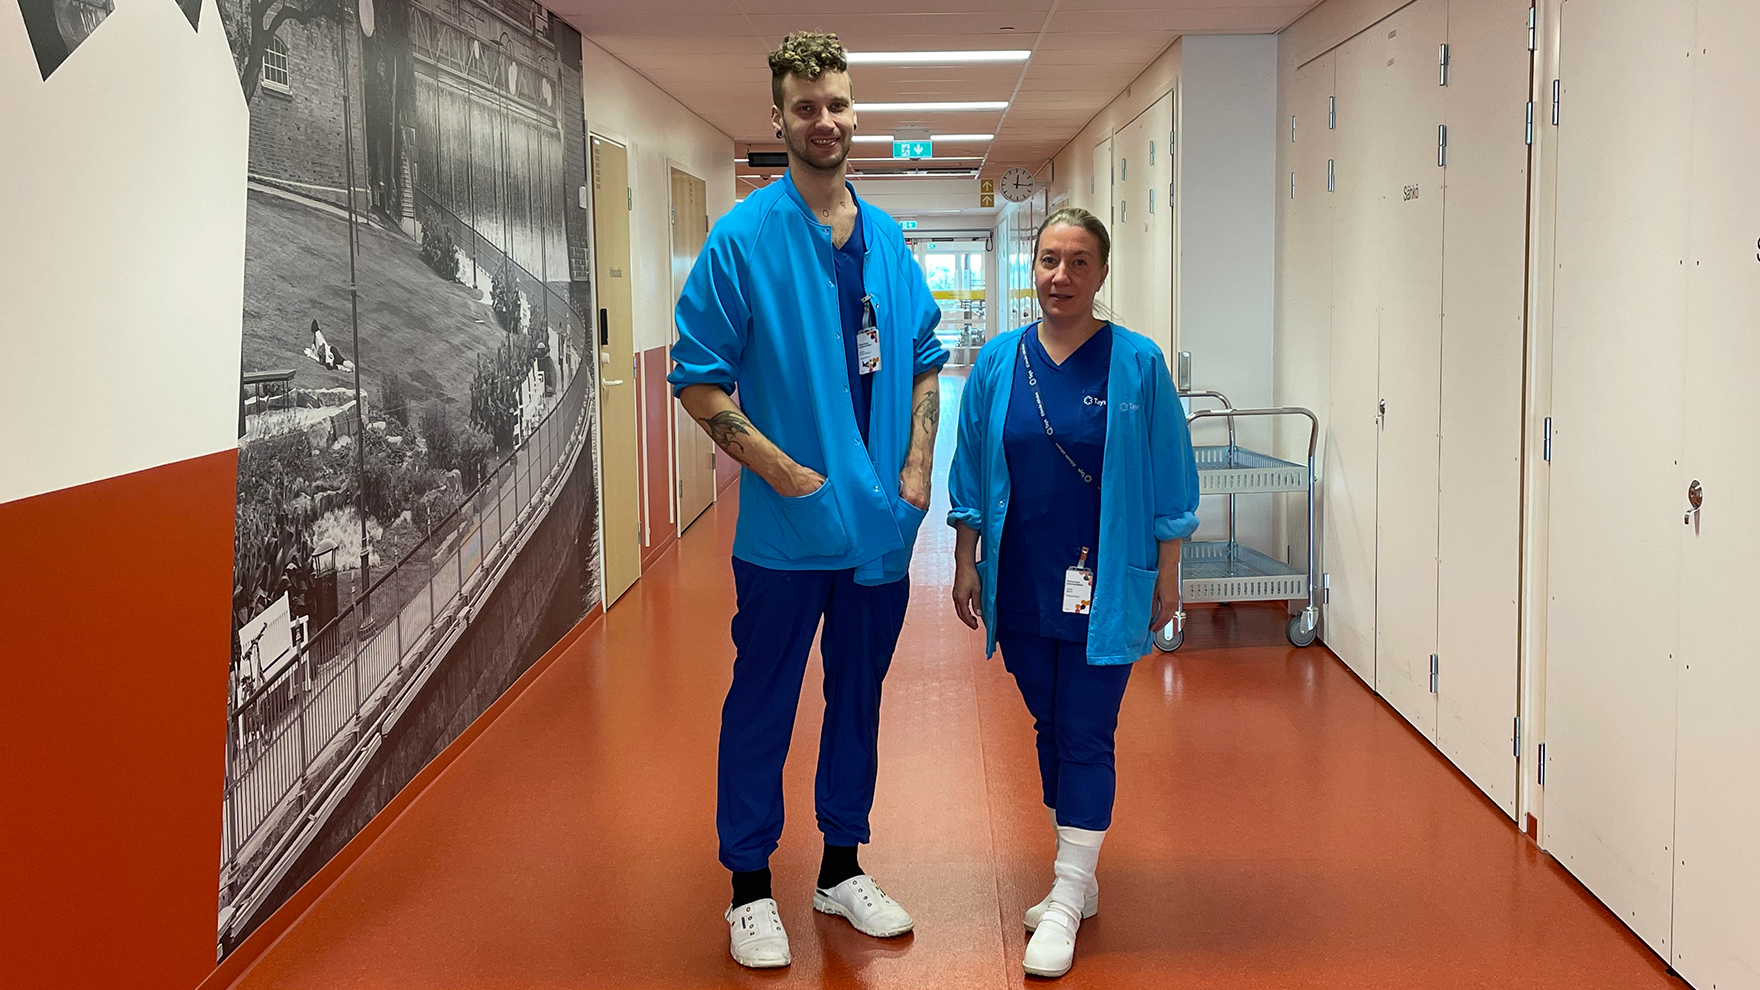 Sairaanhoitajat Oskari ja Emilia seisovat leikkausosaston käytävällä.